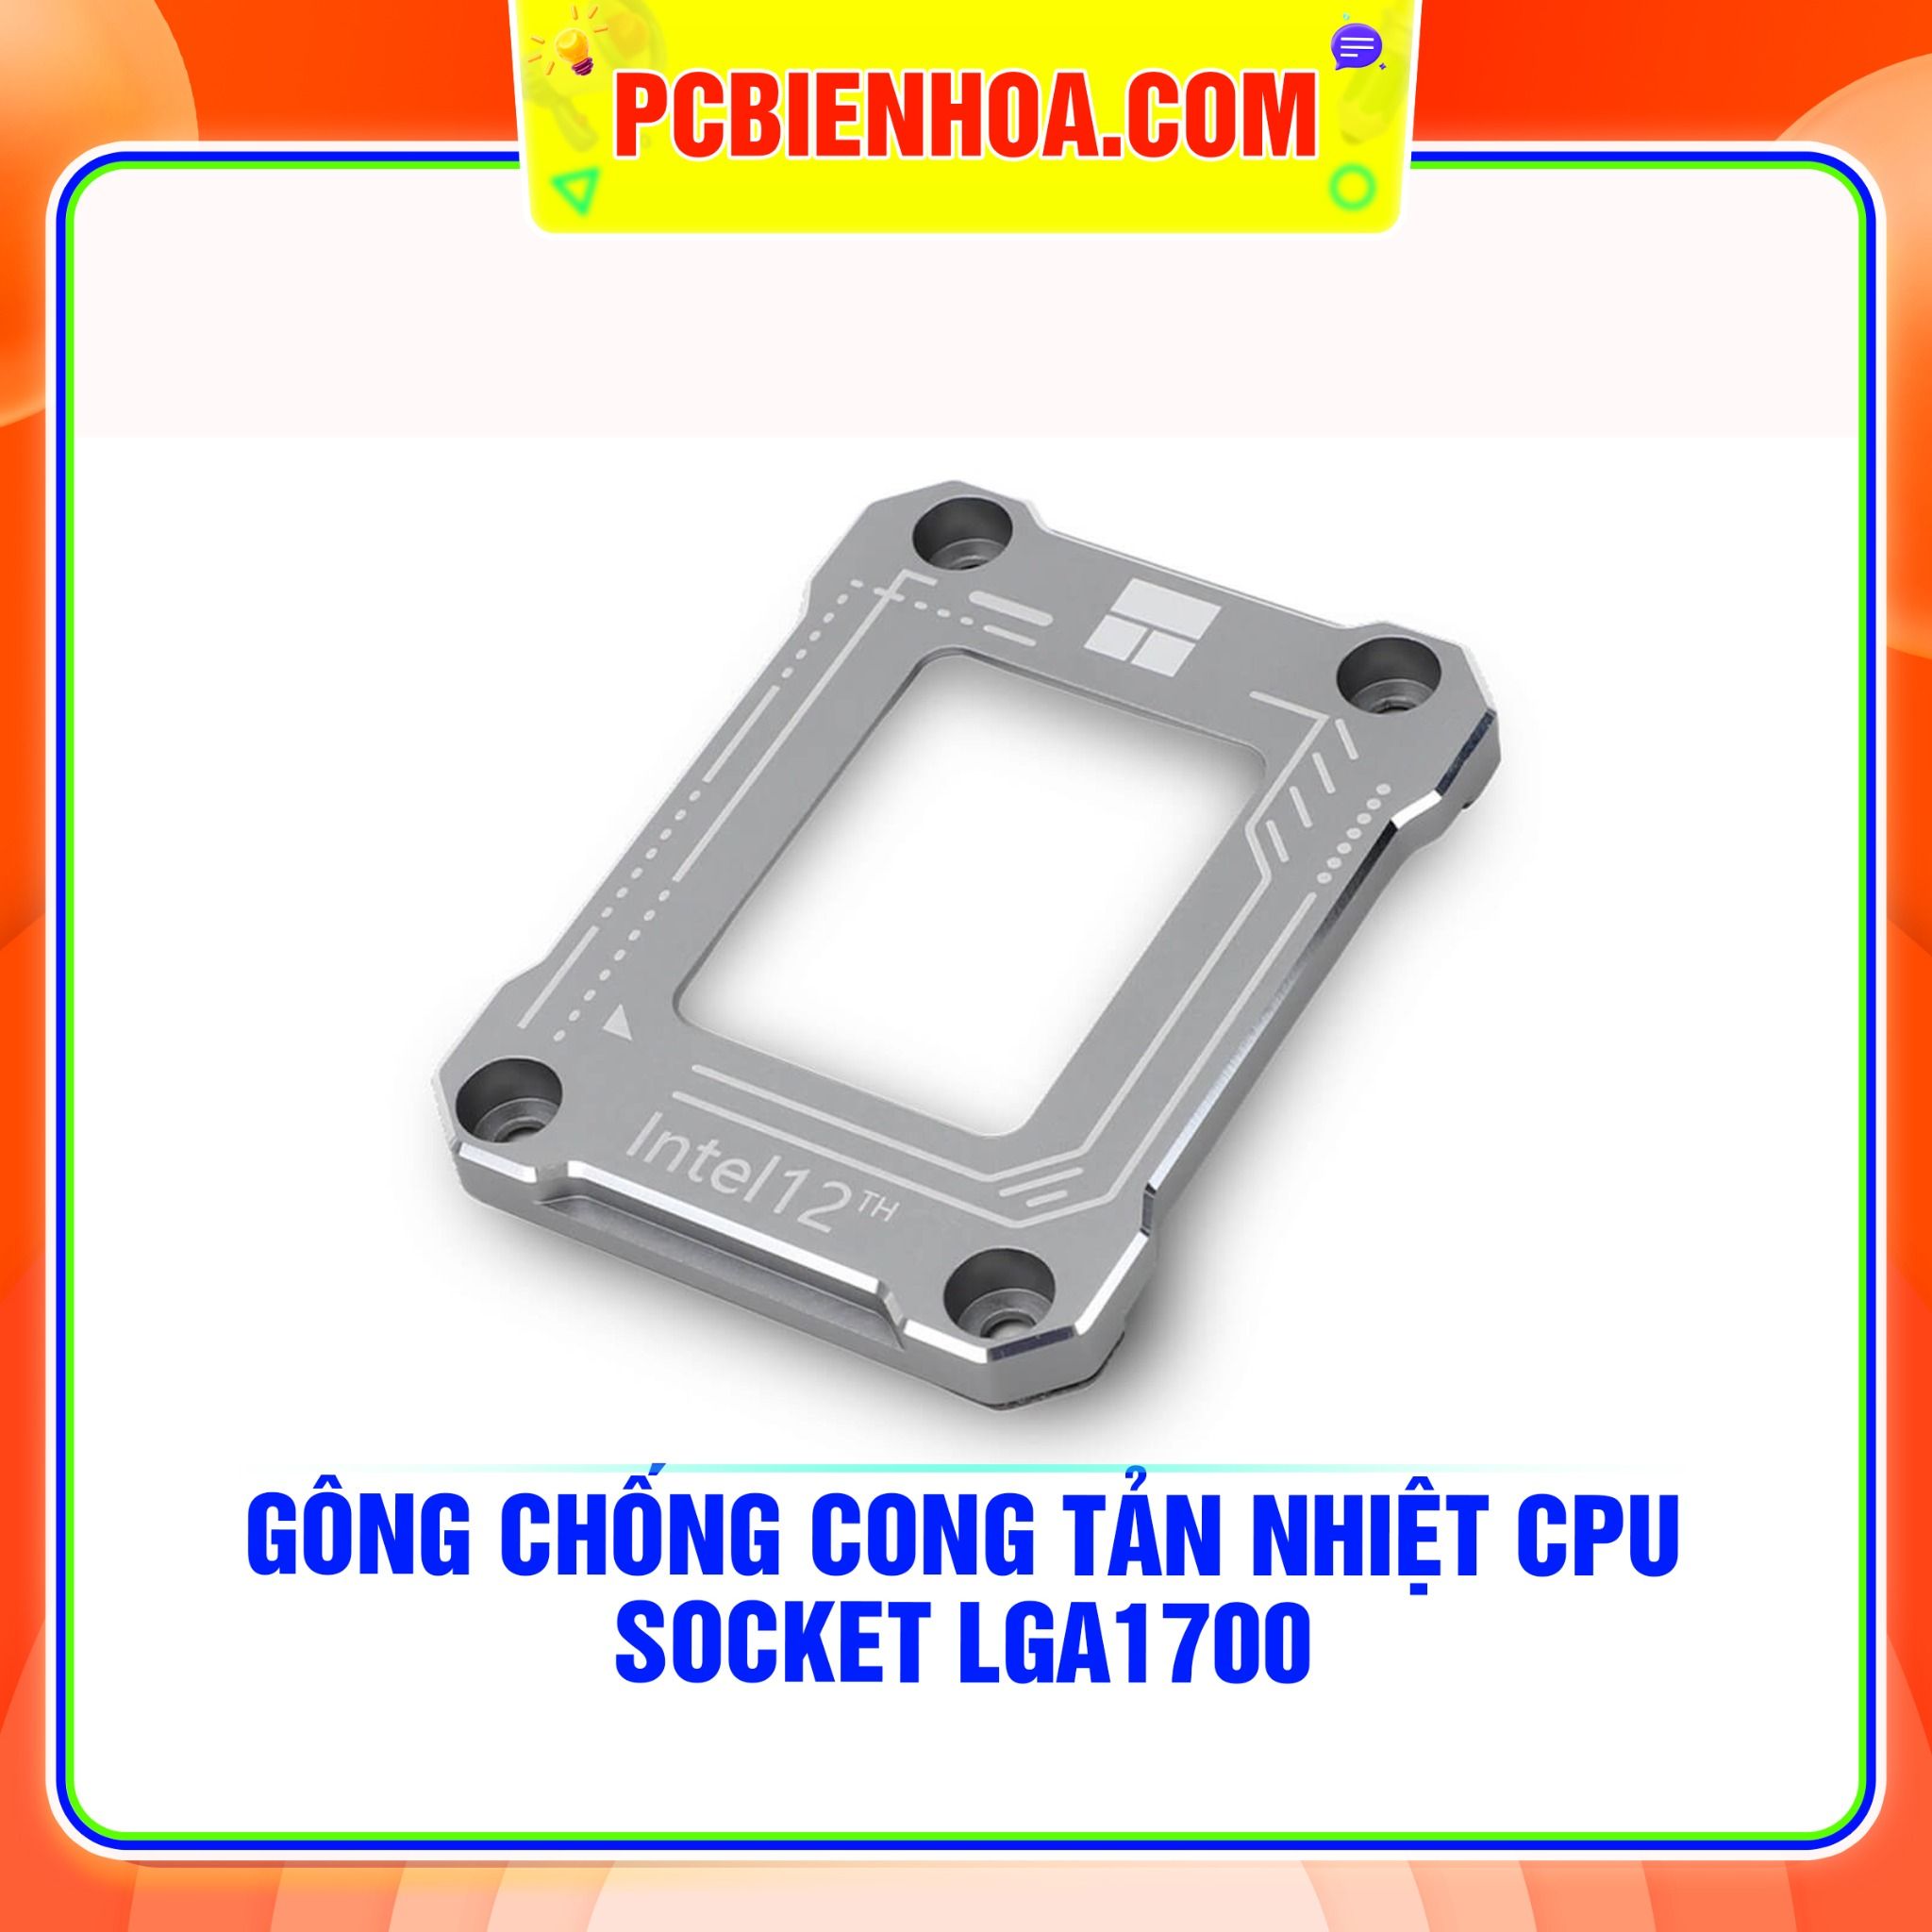  GÔNG CHỐNG CONG TẢN NHIỆT CPU SOCKET LGA1700 